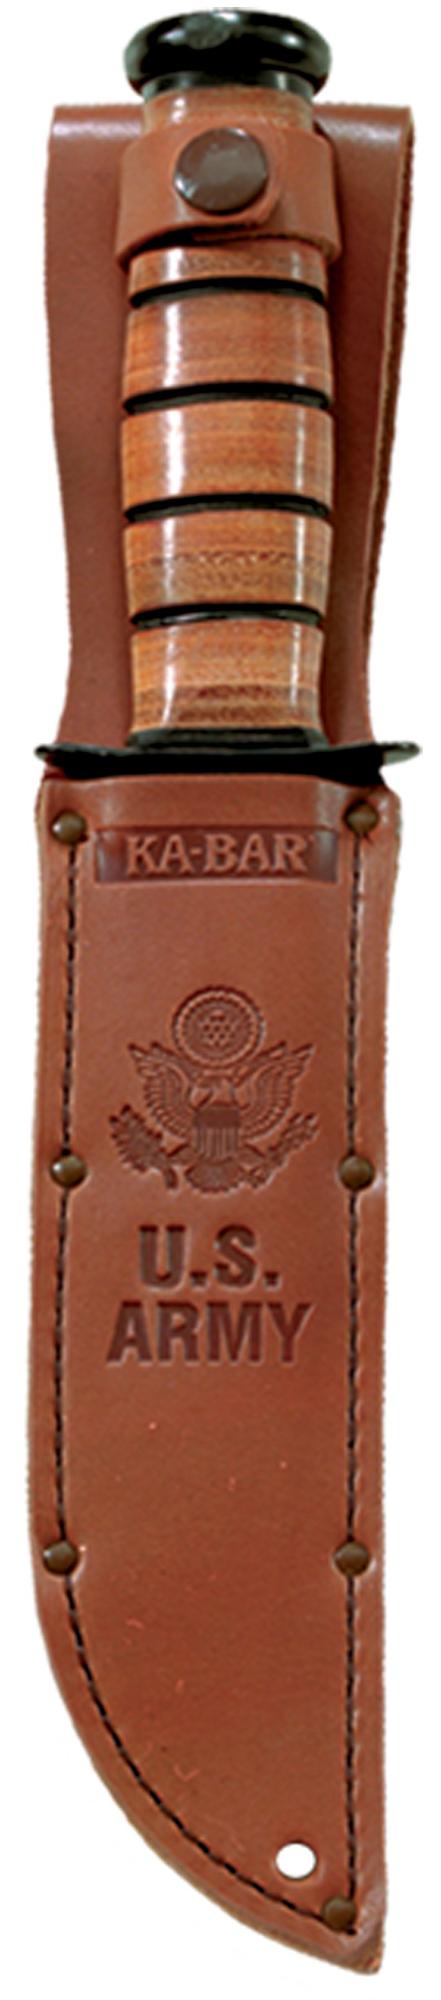 U.S. ARMY KA-BAR®, (Straight Edge, Leather Sheath)